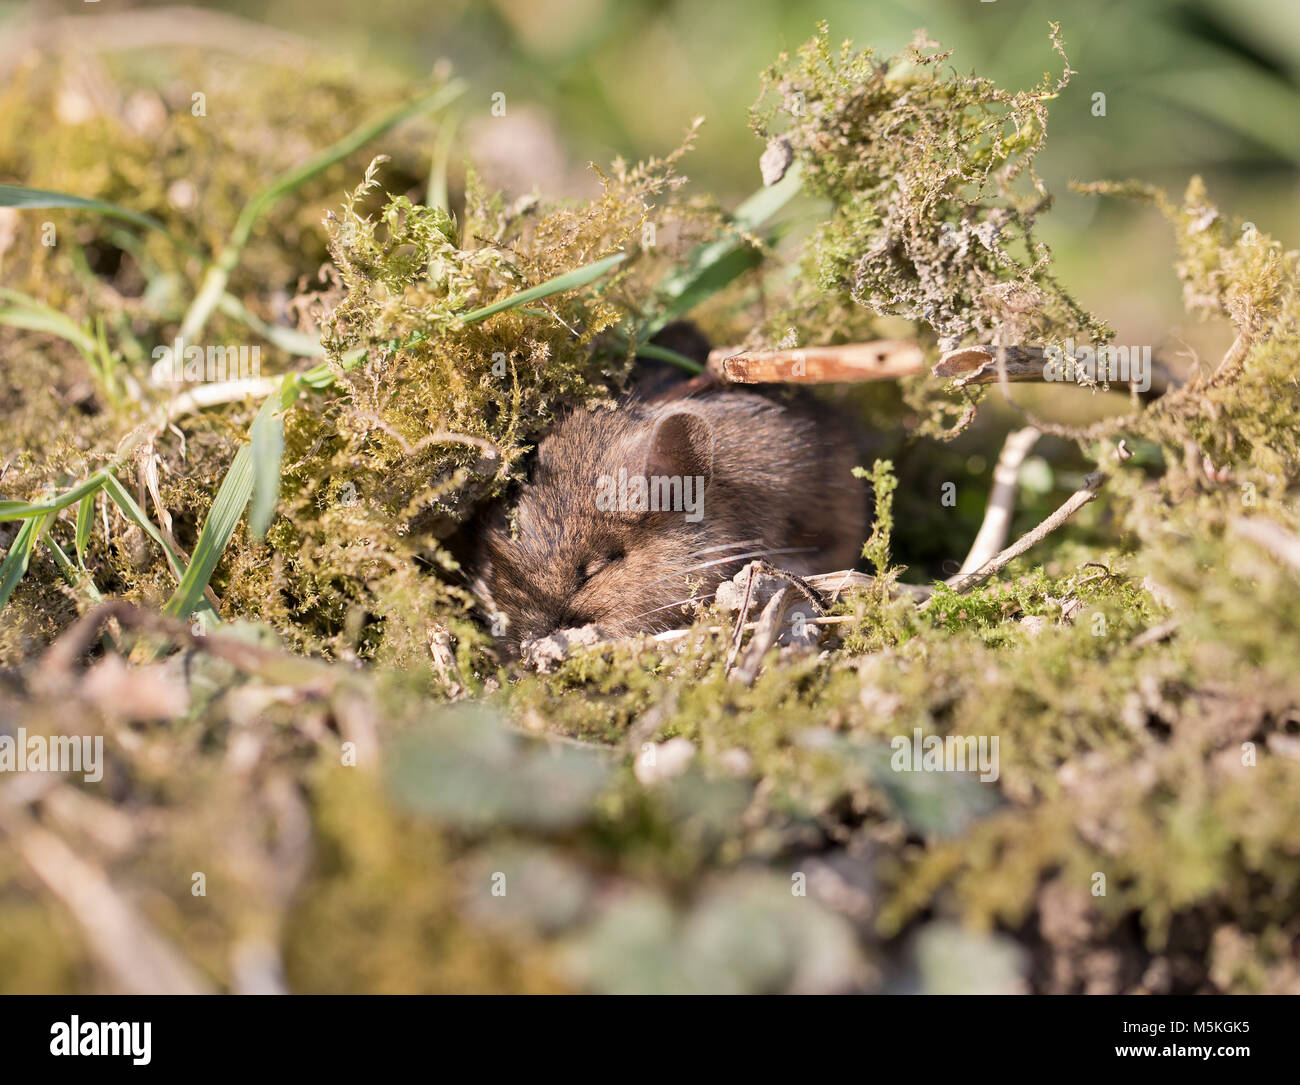 Madera (Apodemus sylvaticus ratón) dormido en un jardín,invierno,2018, UK Foto de stock